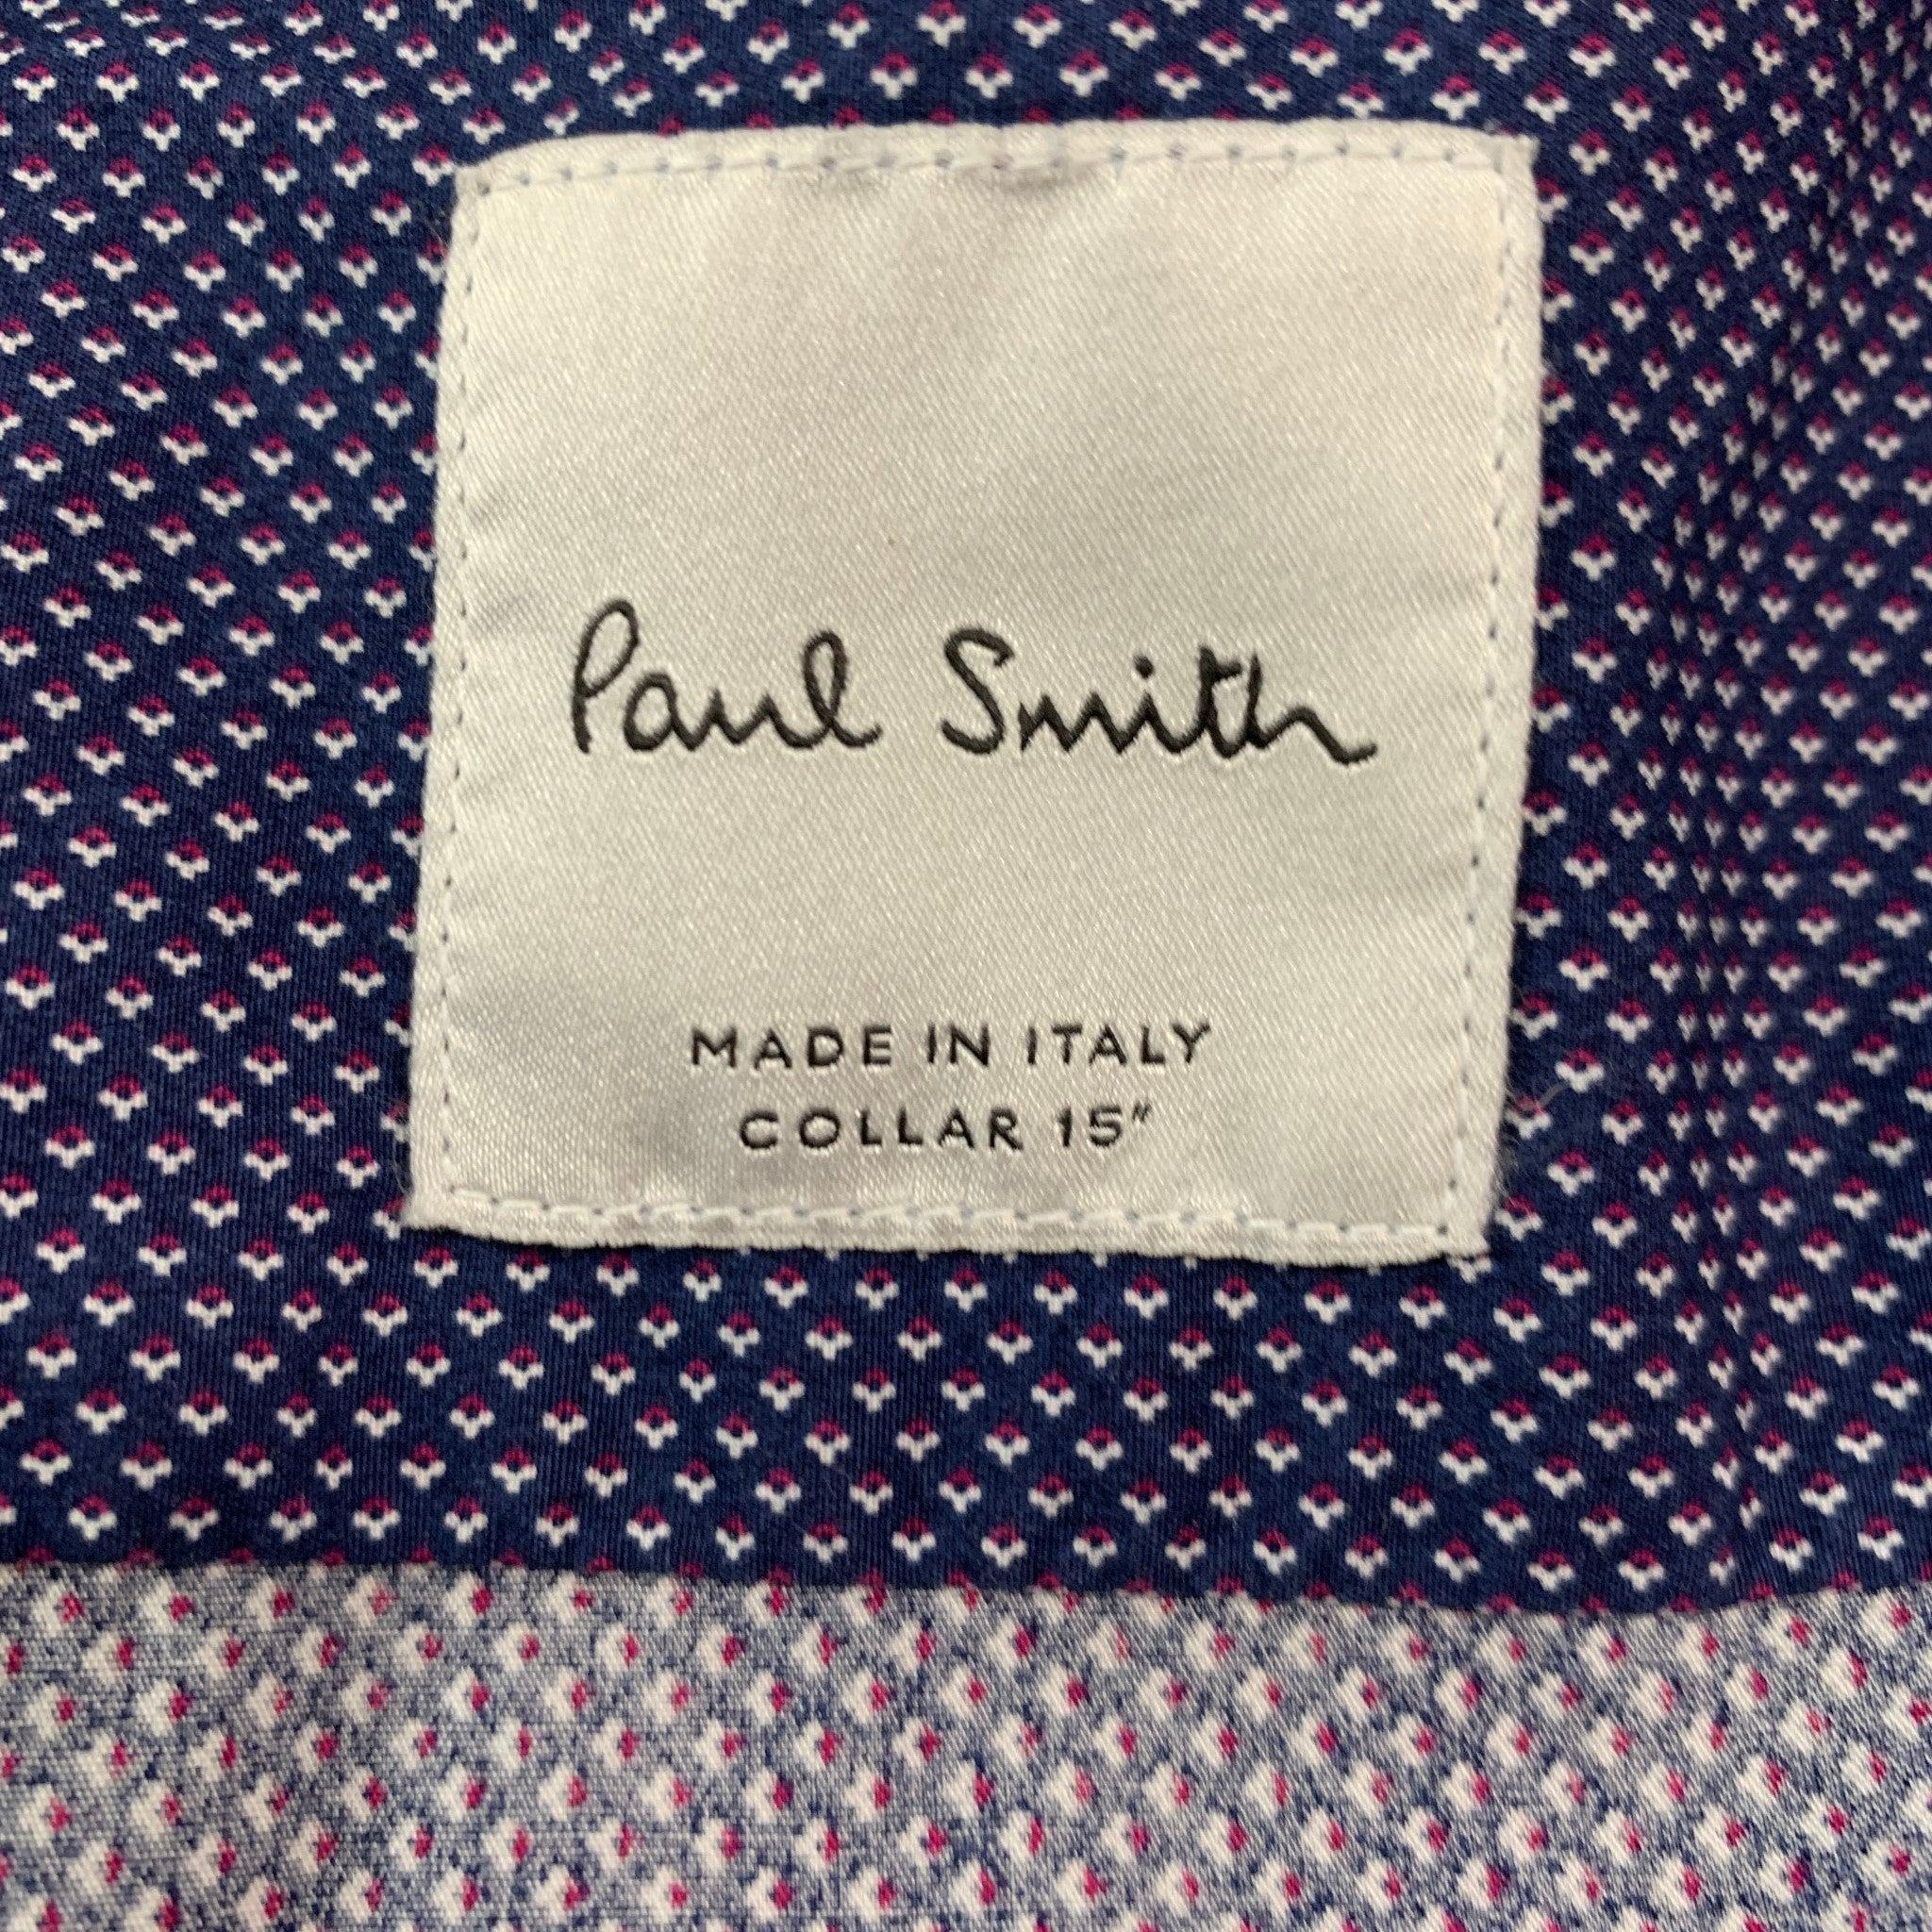  PAUL SMITH - Chemise à manches longues à col en coton à pois bleus et rouges, taille M Pour hommes 